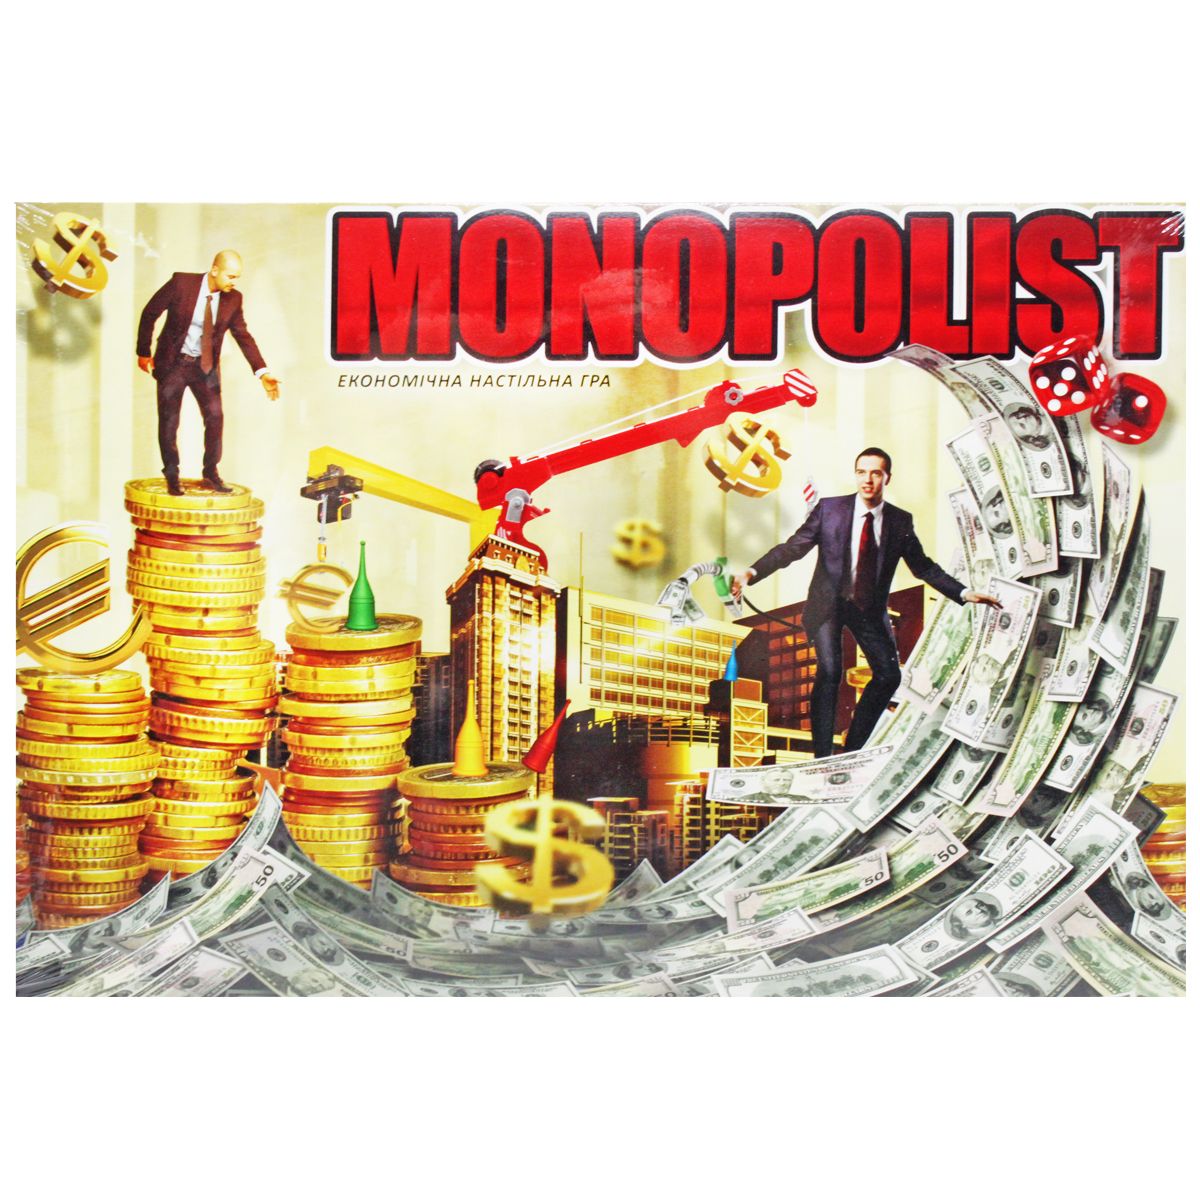 Економічна настільна гра "Monopolist" (укр)